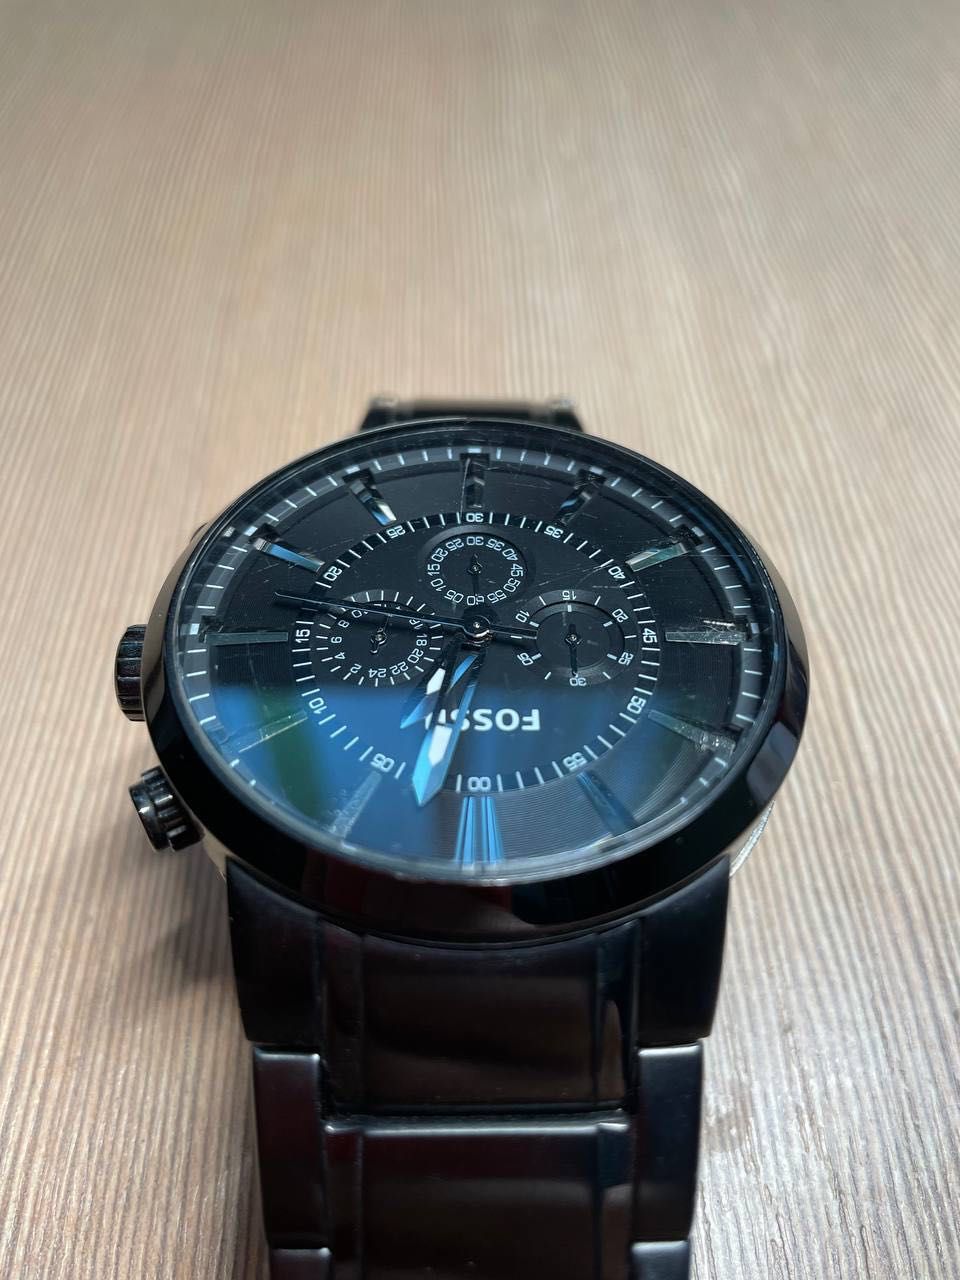 Zegarek męski Fossil FS4778 - cena nowego to 899 zł